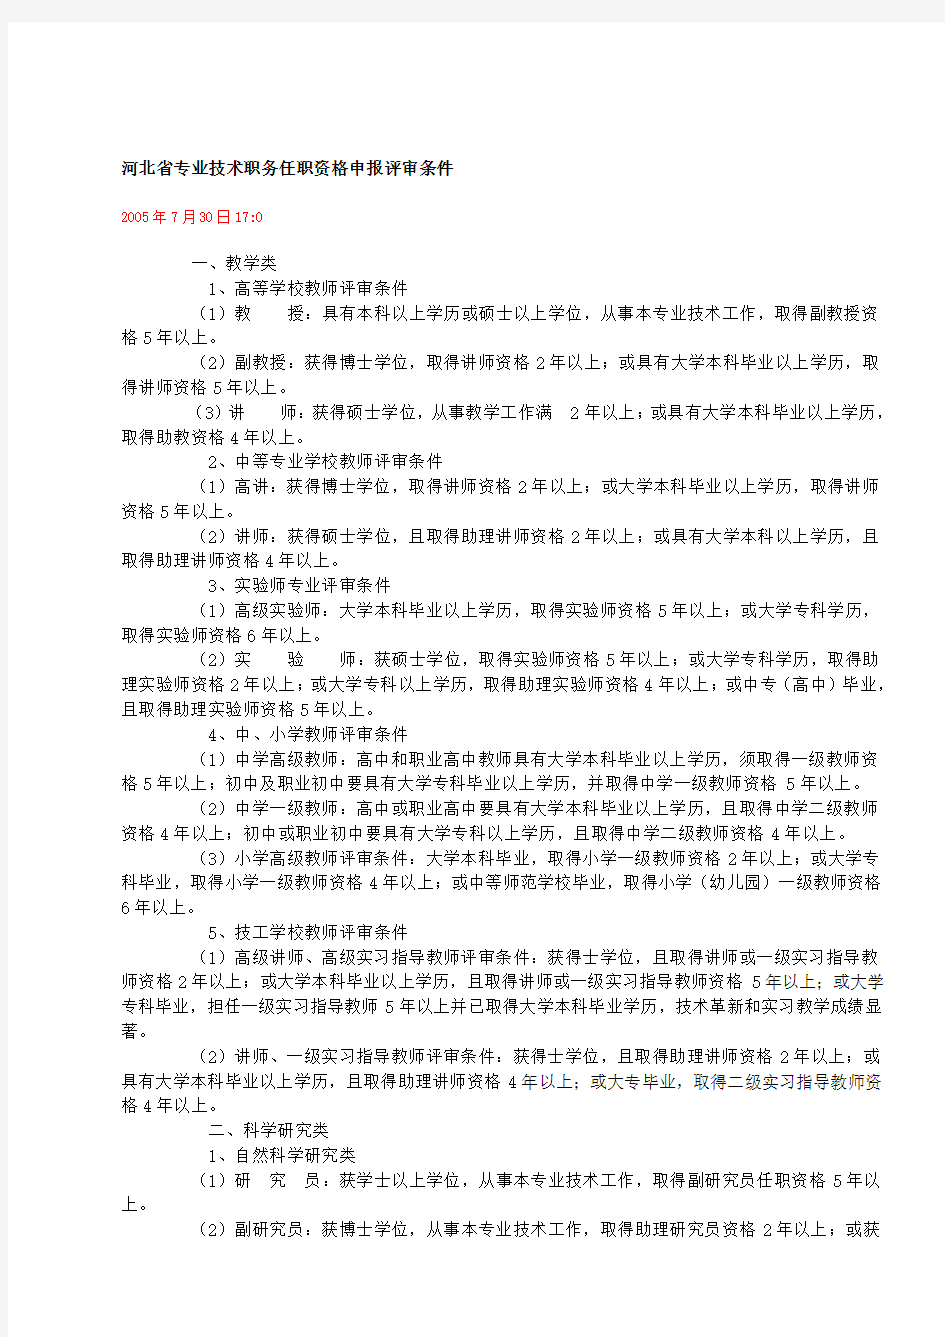 河北省专业技术职务任职资格申报评审条件